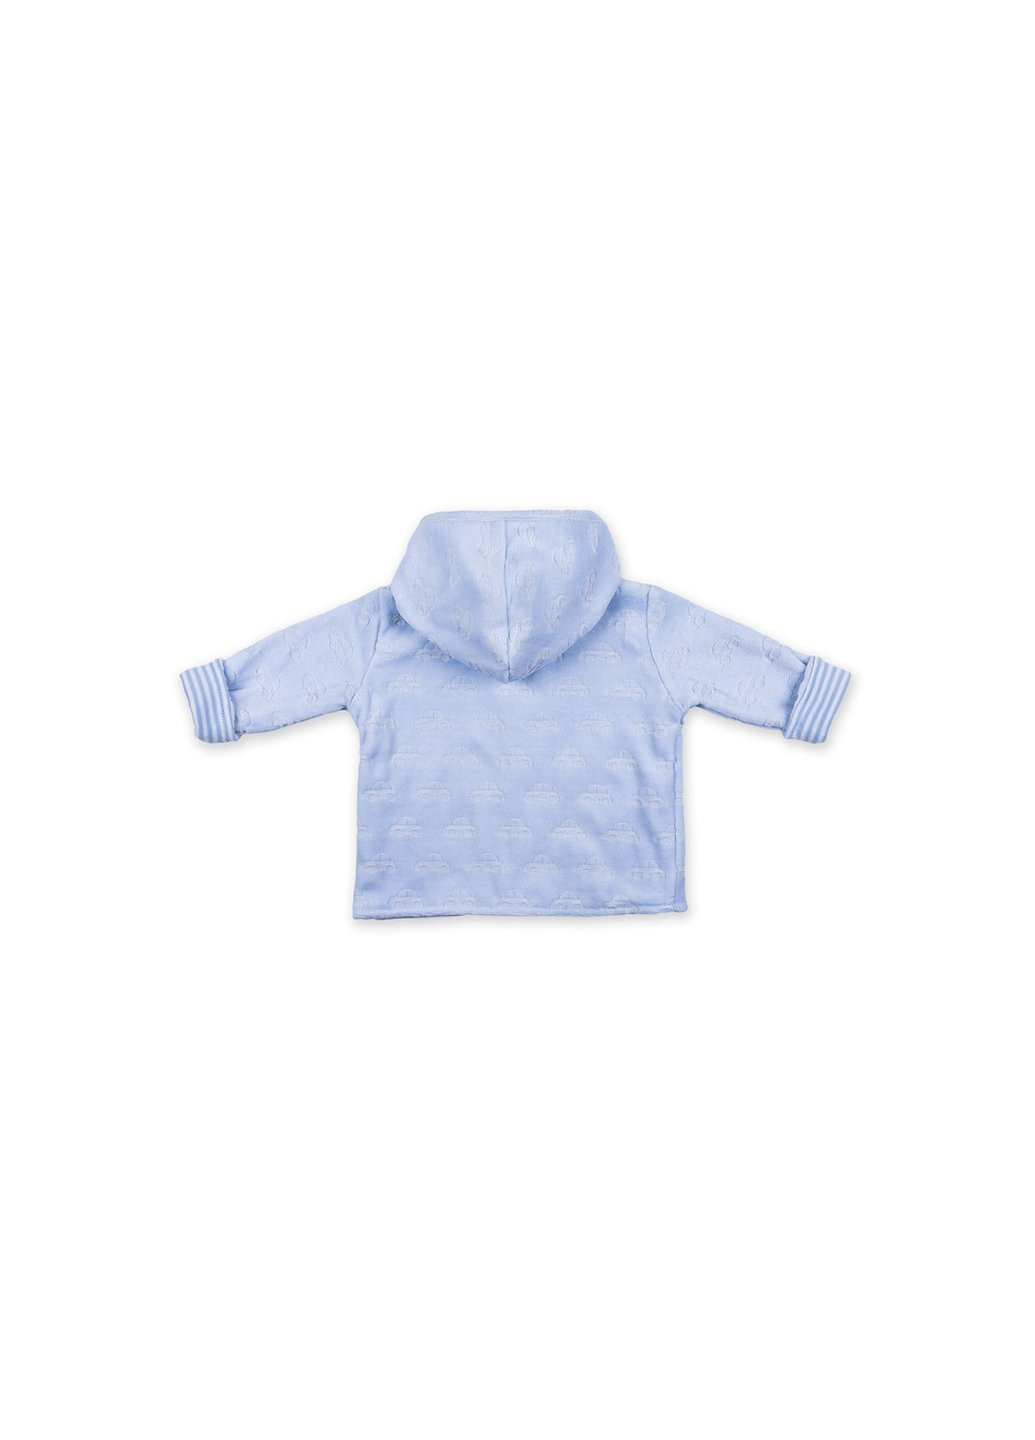 Комбинированный демисезонный набор детской одежды велюровый голубой c капюшоном (ep6206.0-3) Luvena Fortuna